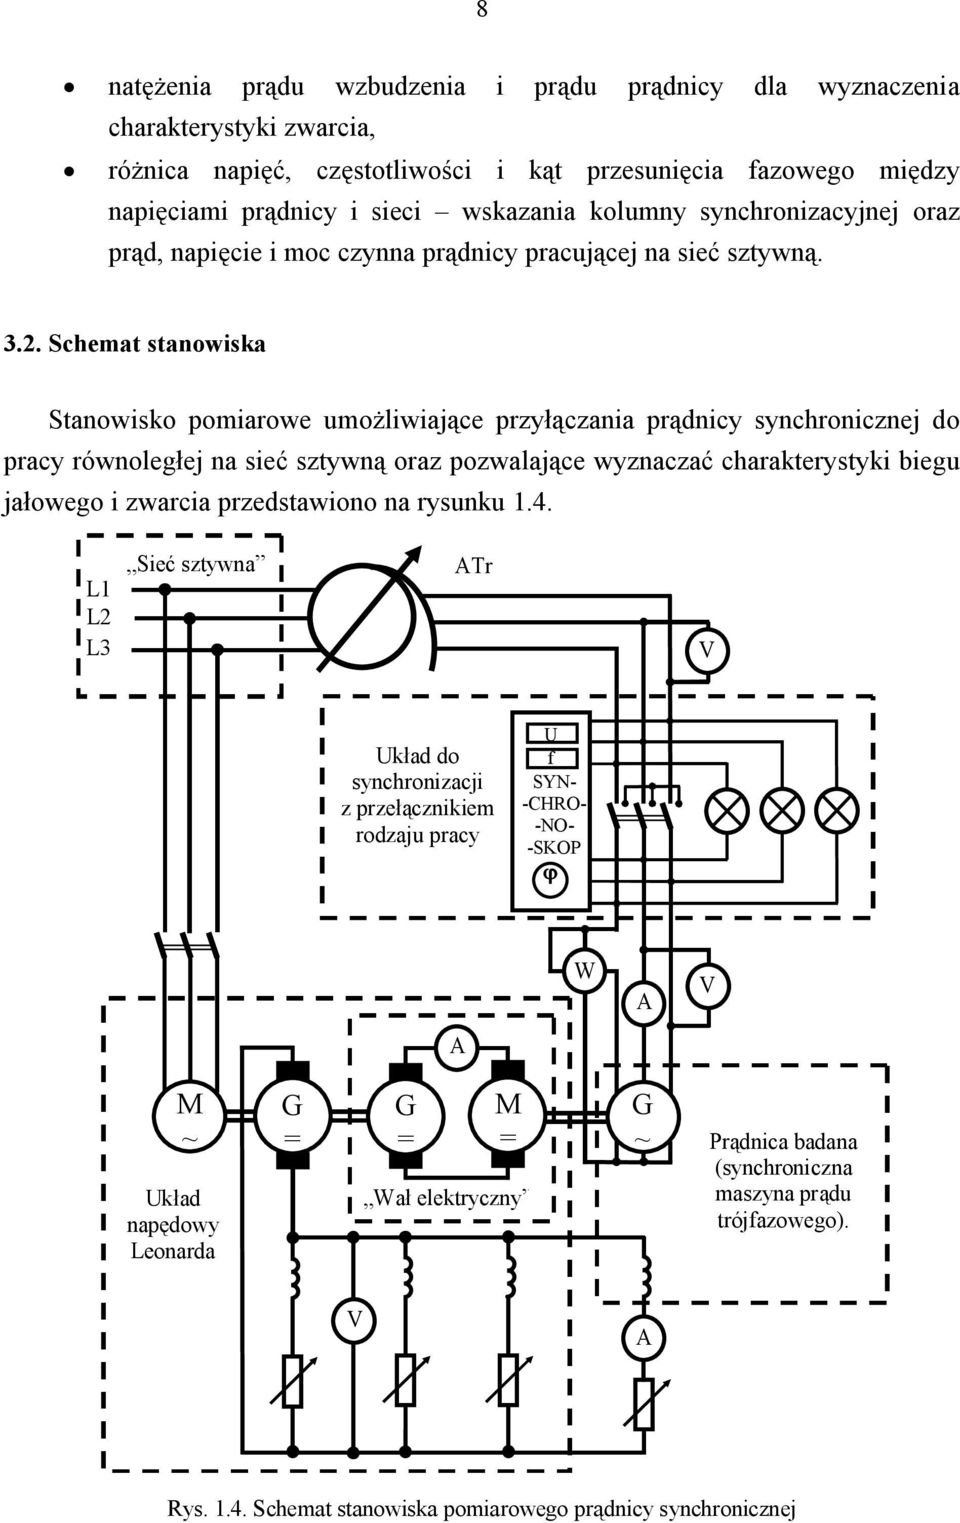 Schemat stanowiska Stanowisko pomiarowe umożliwiające przyłączania prądnicy synchronicznej do pracy równoległej na sieć sztywną oraz pozwalające wyznaczać charakterystyki biegu jałowego i zwarcia